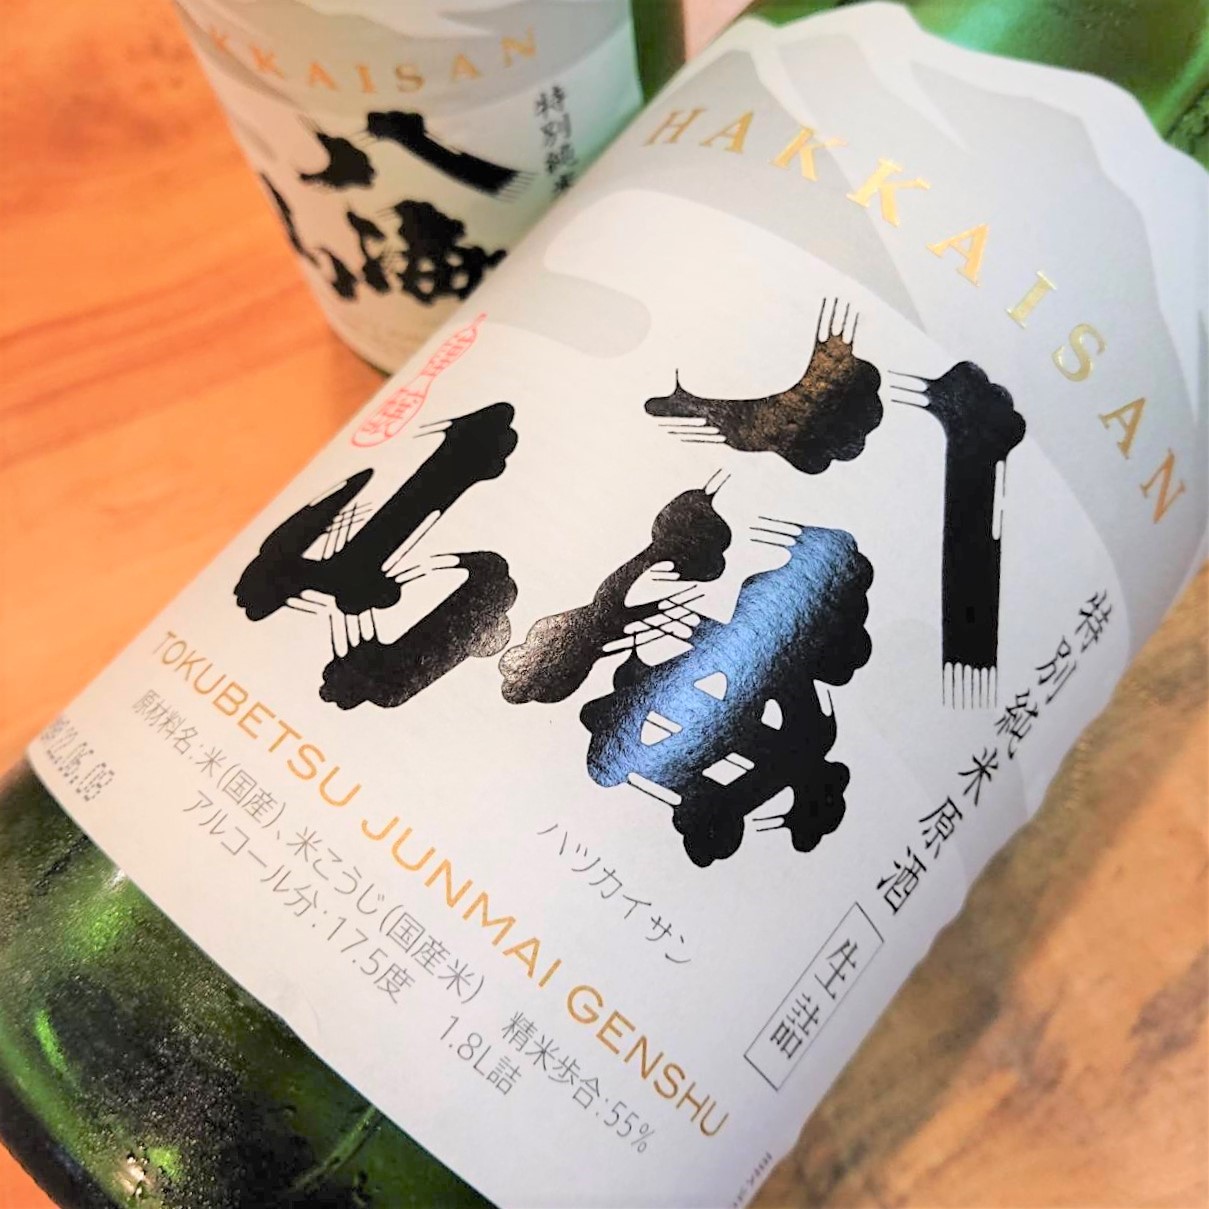 新潟 八海山（はっかいさん）特別純米 原酒